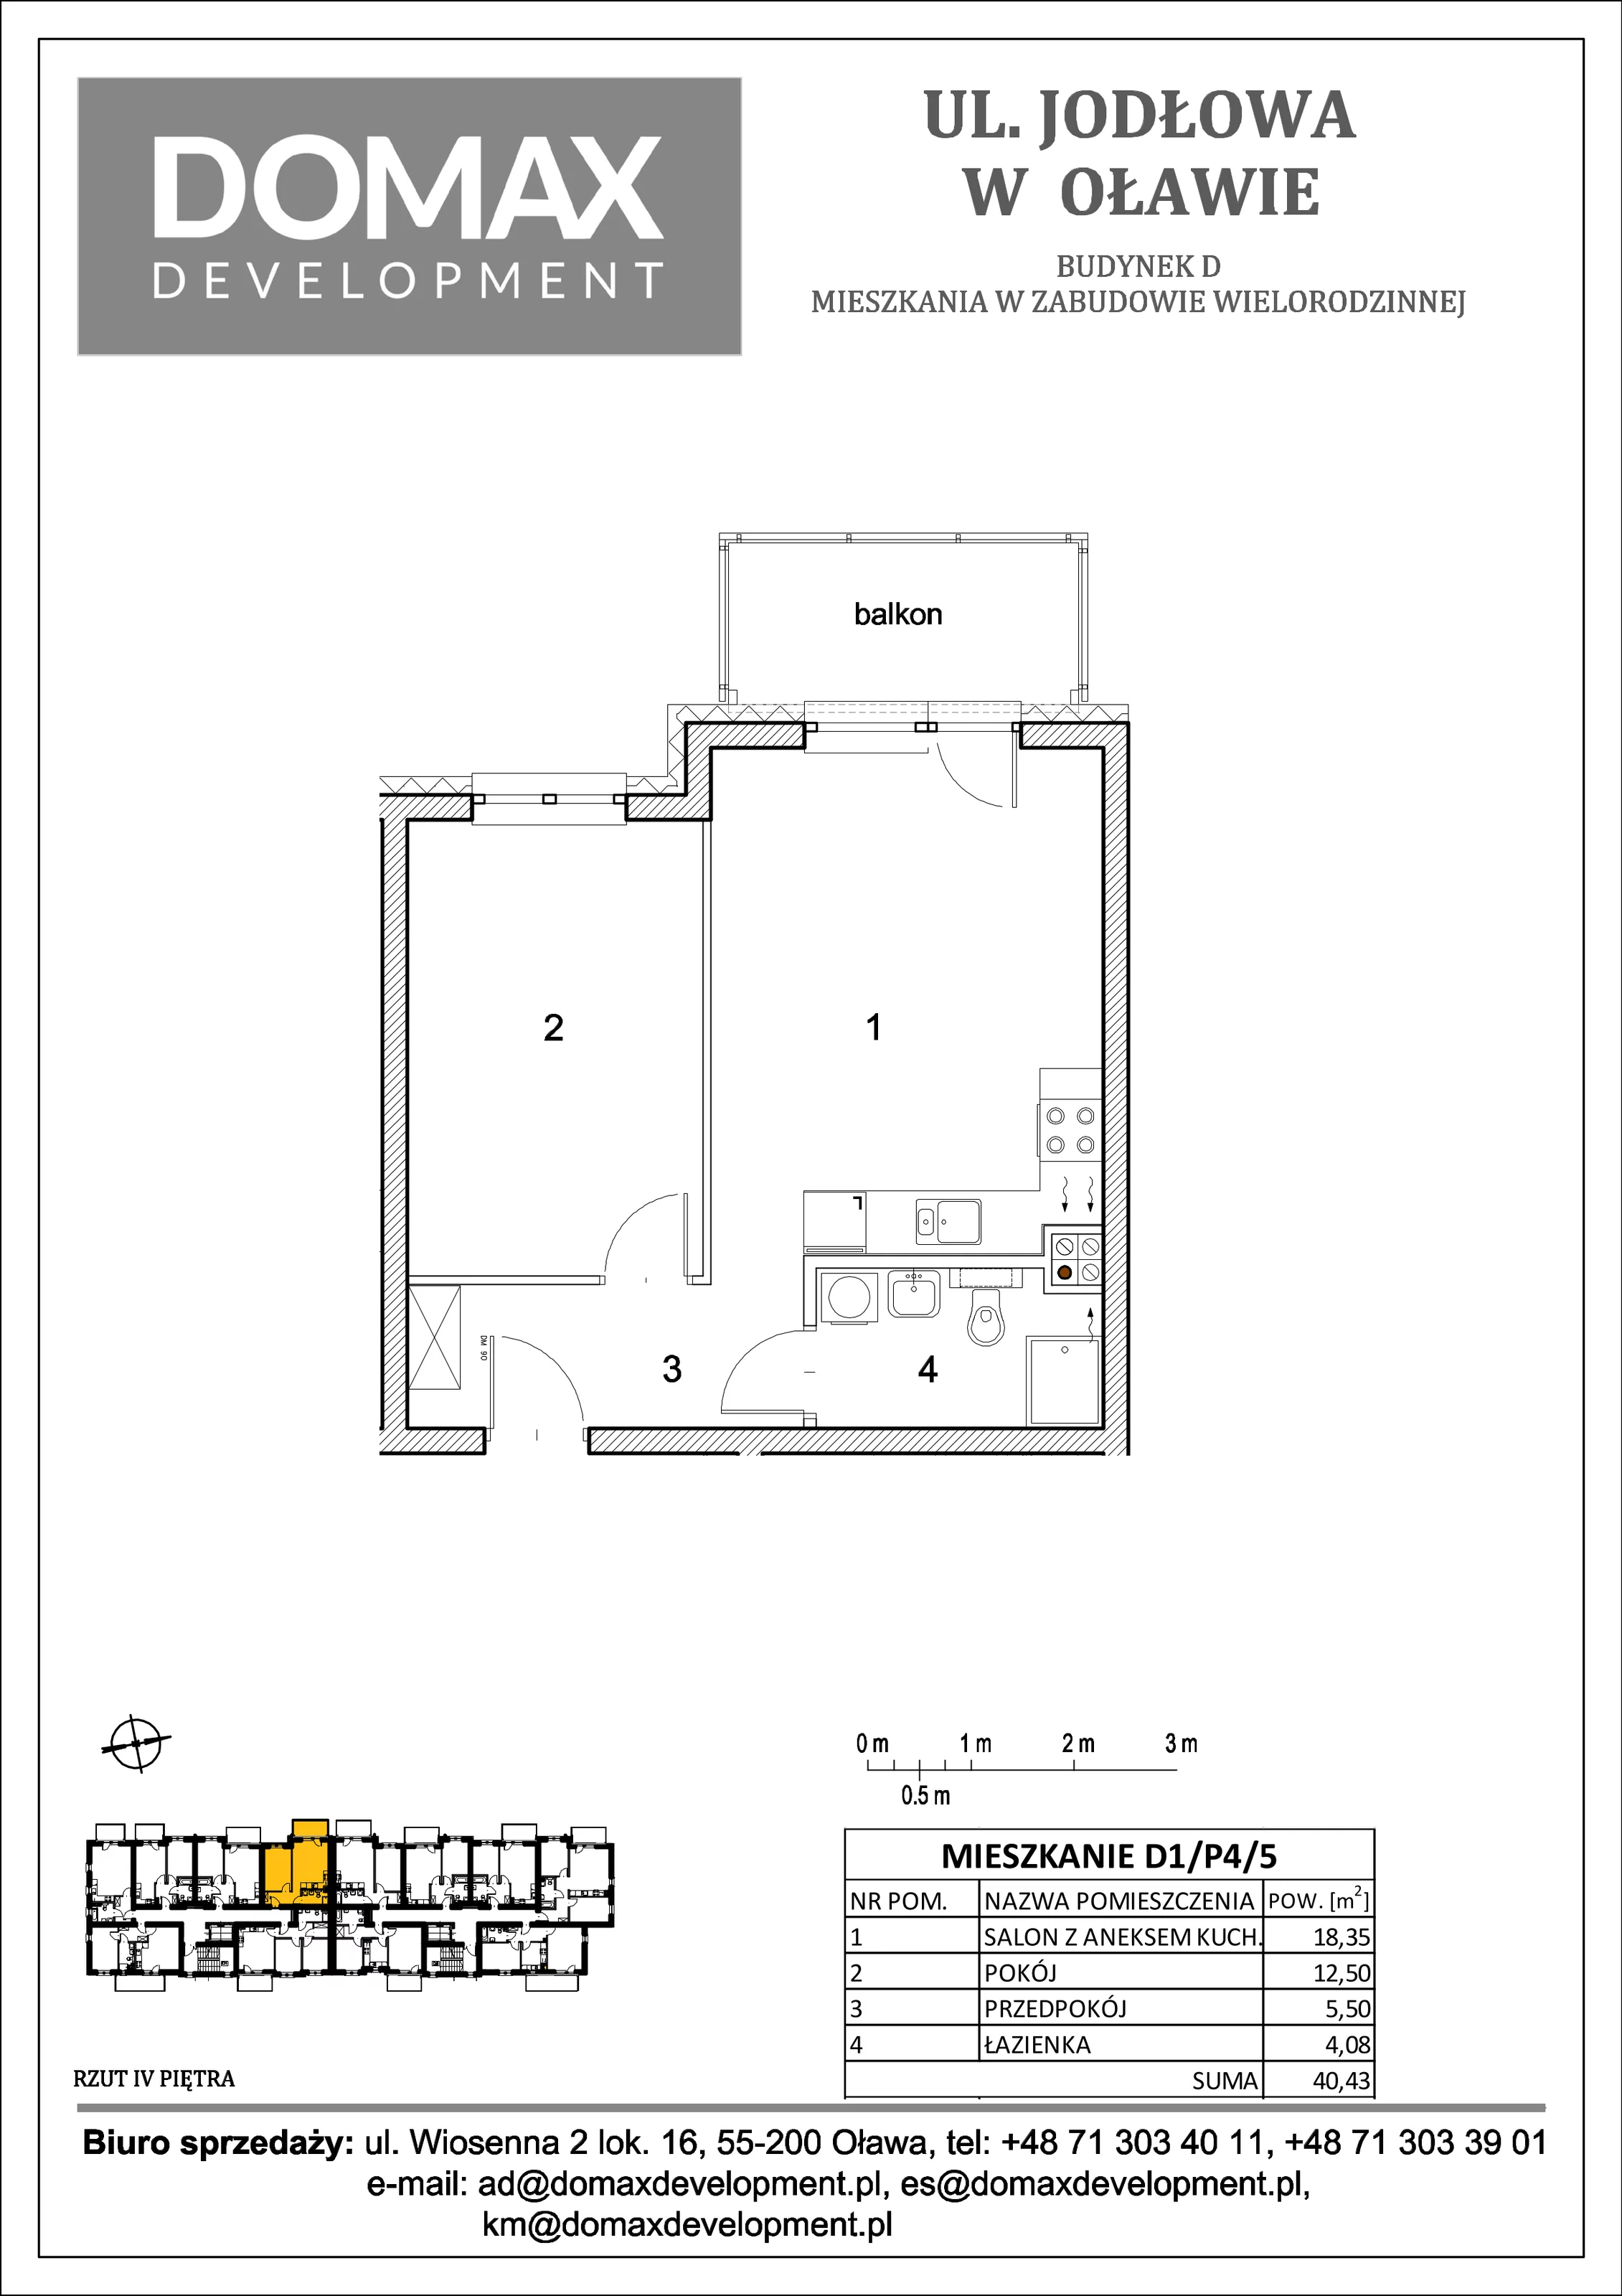 Mieszkanie 40,43 m², piętro 4, oferta nr D1/P4/5, Osiedle Jodłowa etap II, Oława, ul. Jodłowa